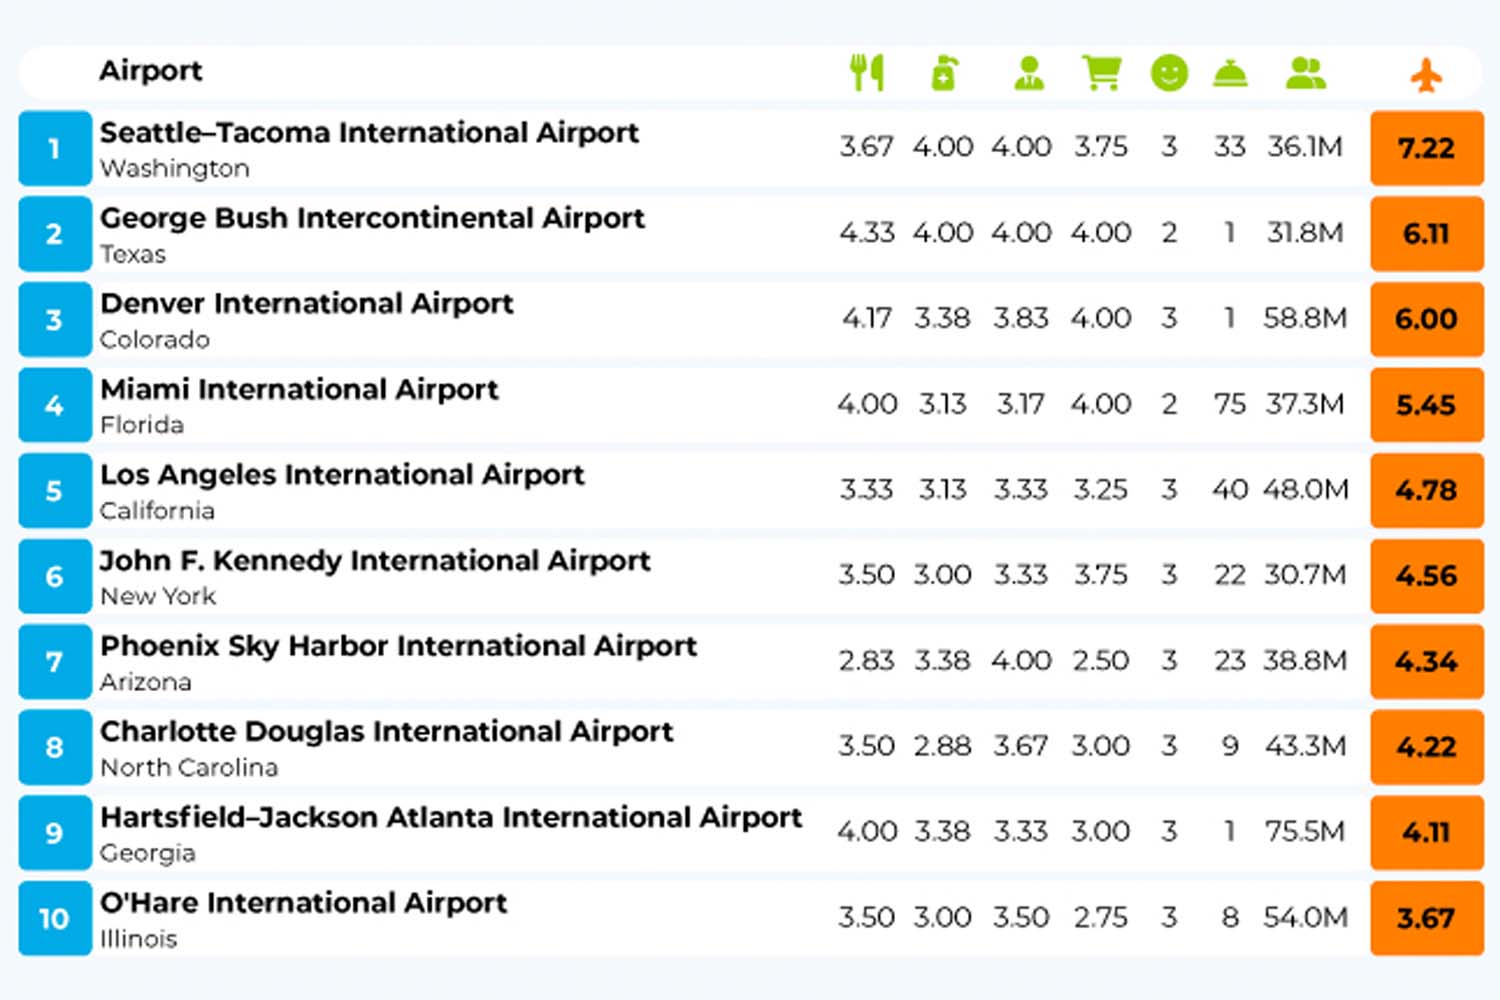 Airport Ratings